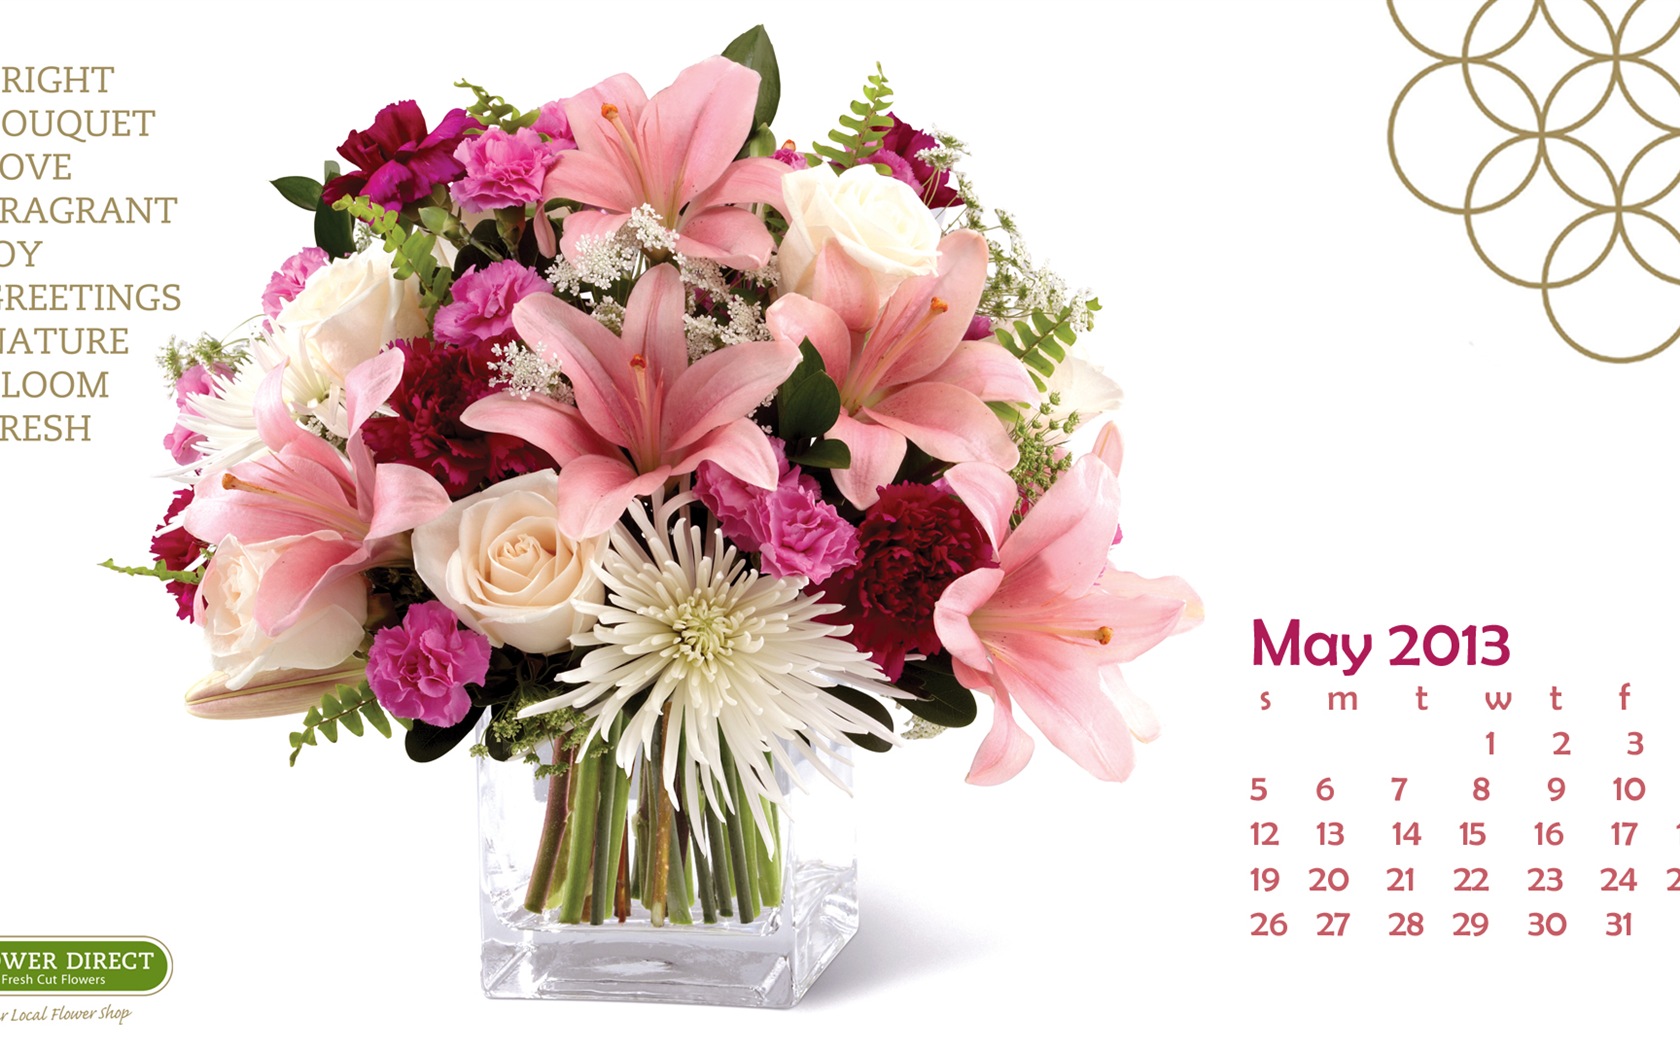 Mayo 2013 fondos de escritorio calendario (2) #22 - 1680x1050